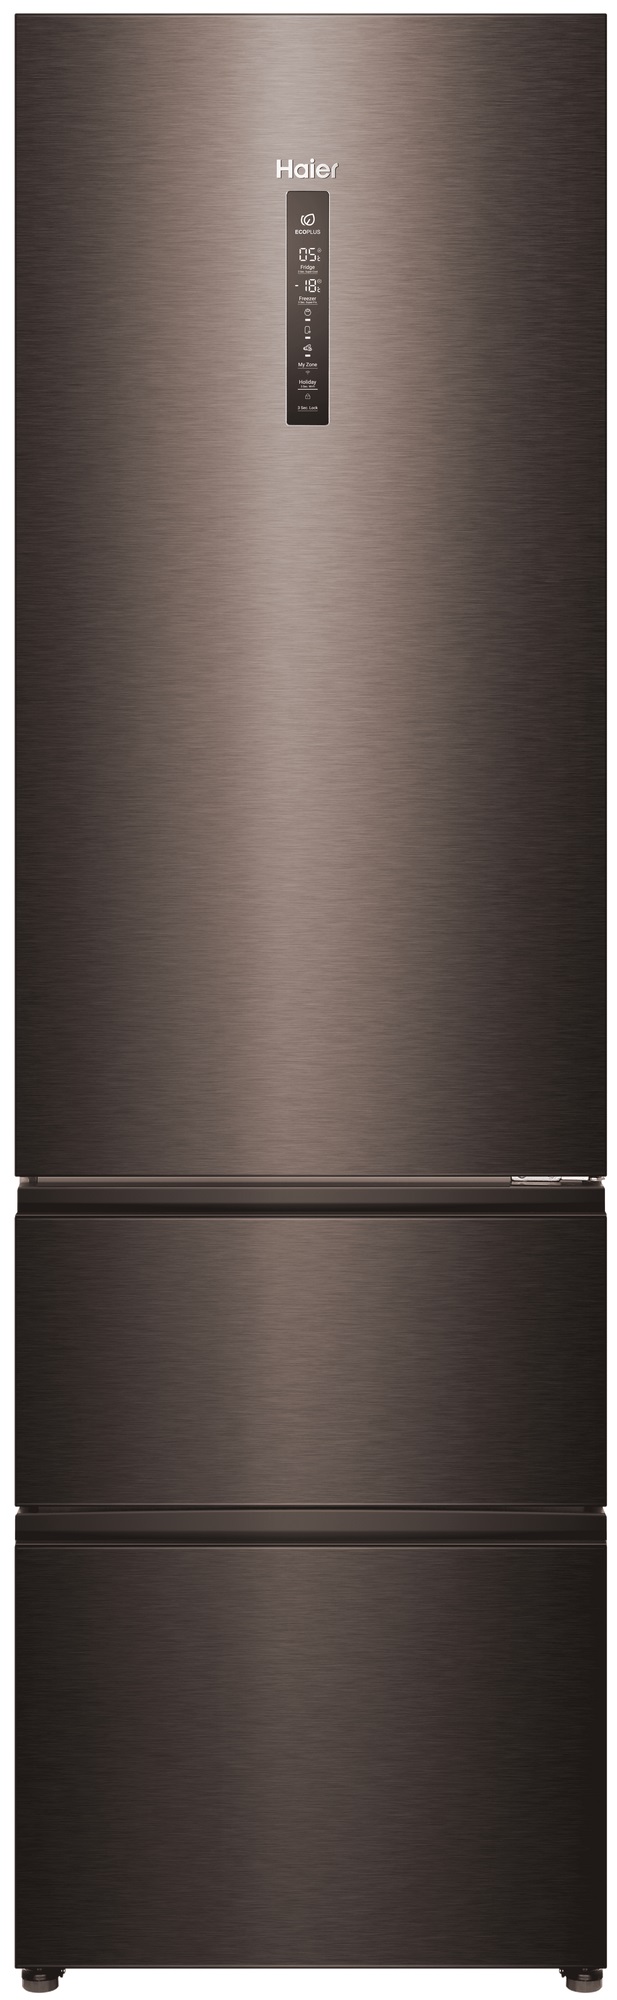 Холодильник Haier A4F739CDBGU1 серый холодильник haier c2f636cwrg белый